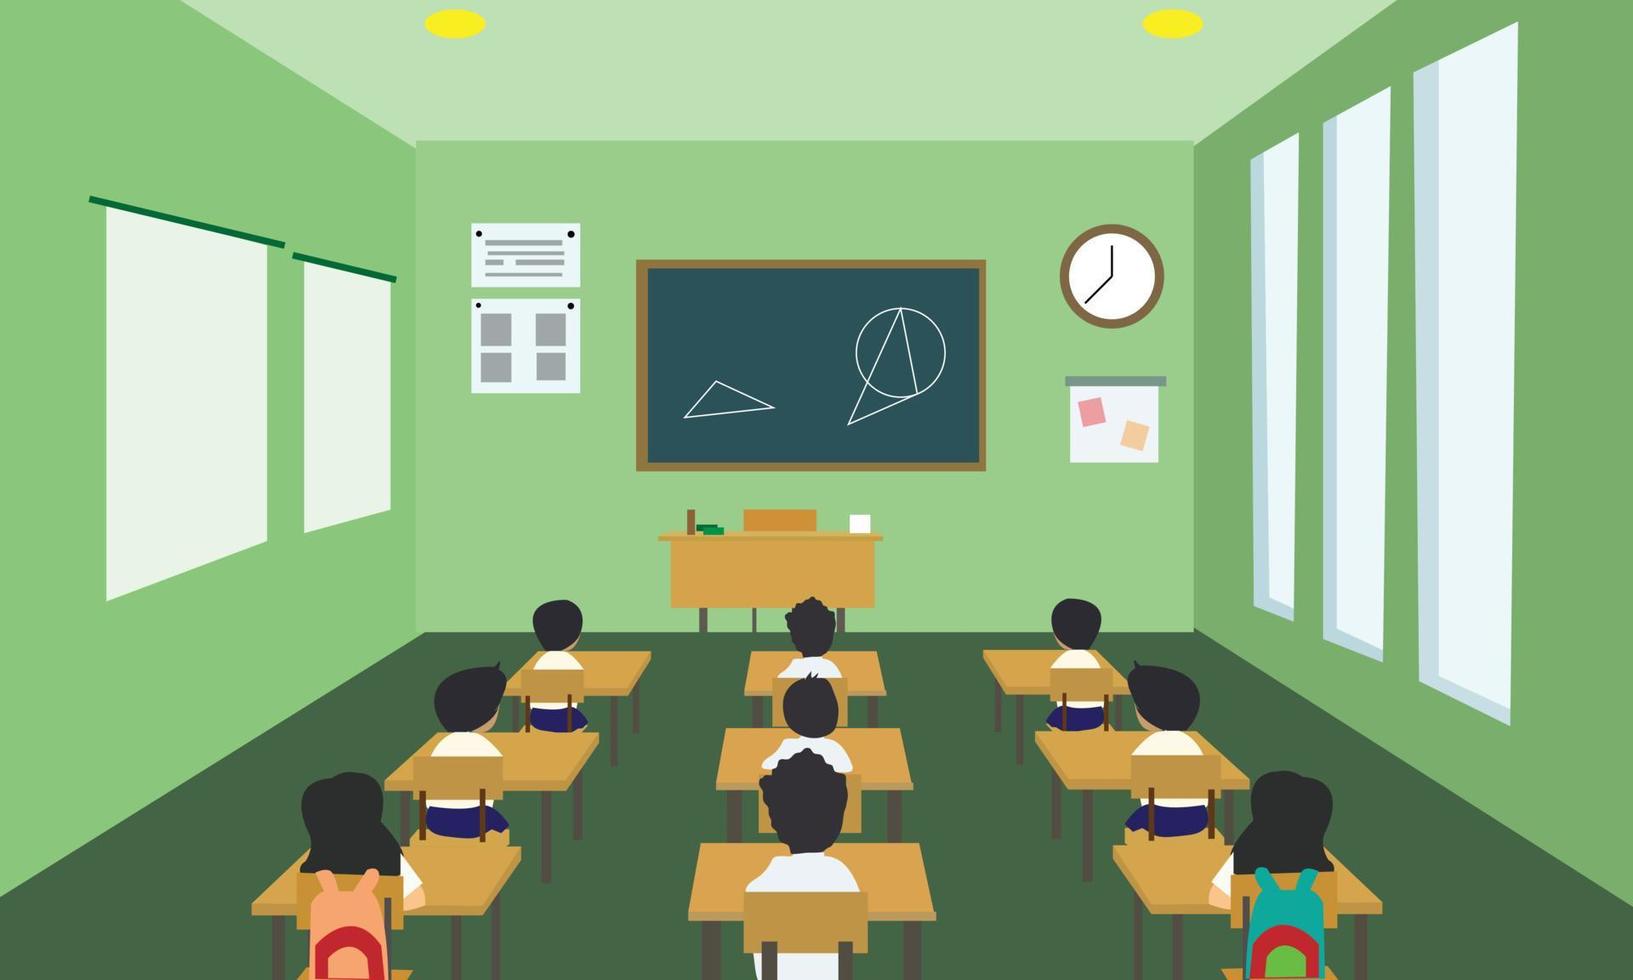 conception d'animation d'étudiants étudiant en classe, étudiants étudiant en classe, classe d'école vecteur